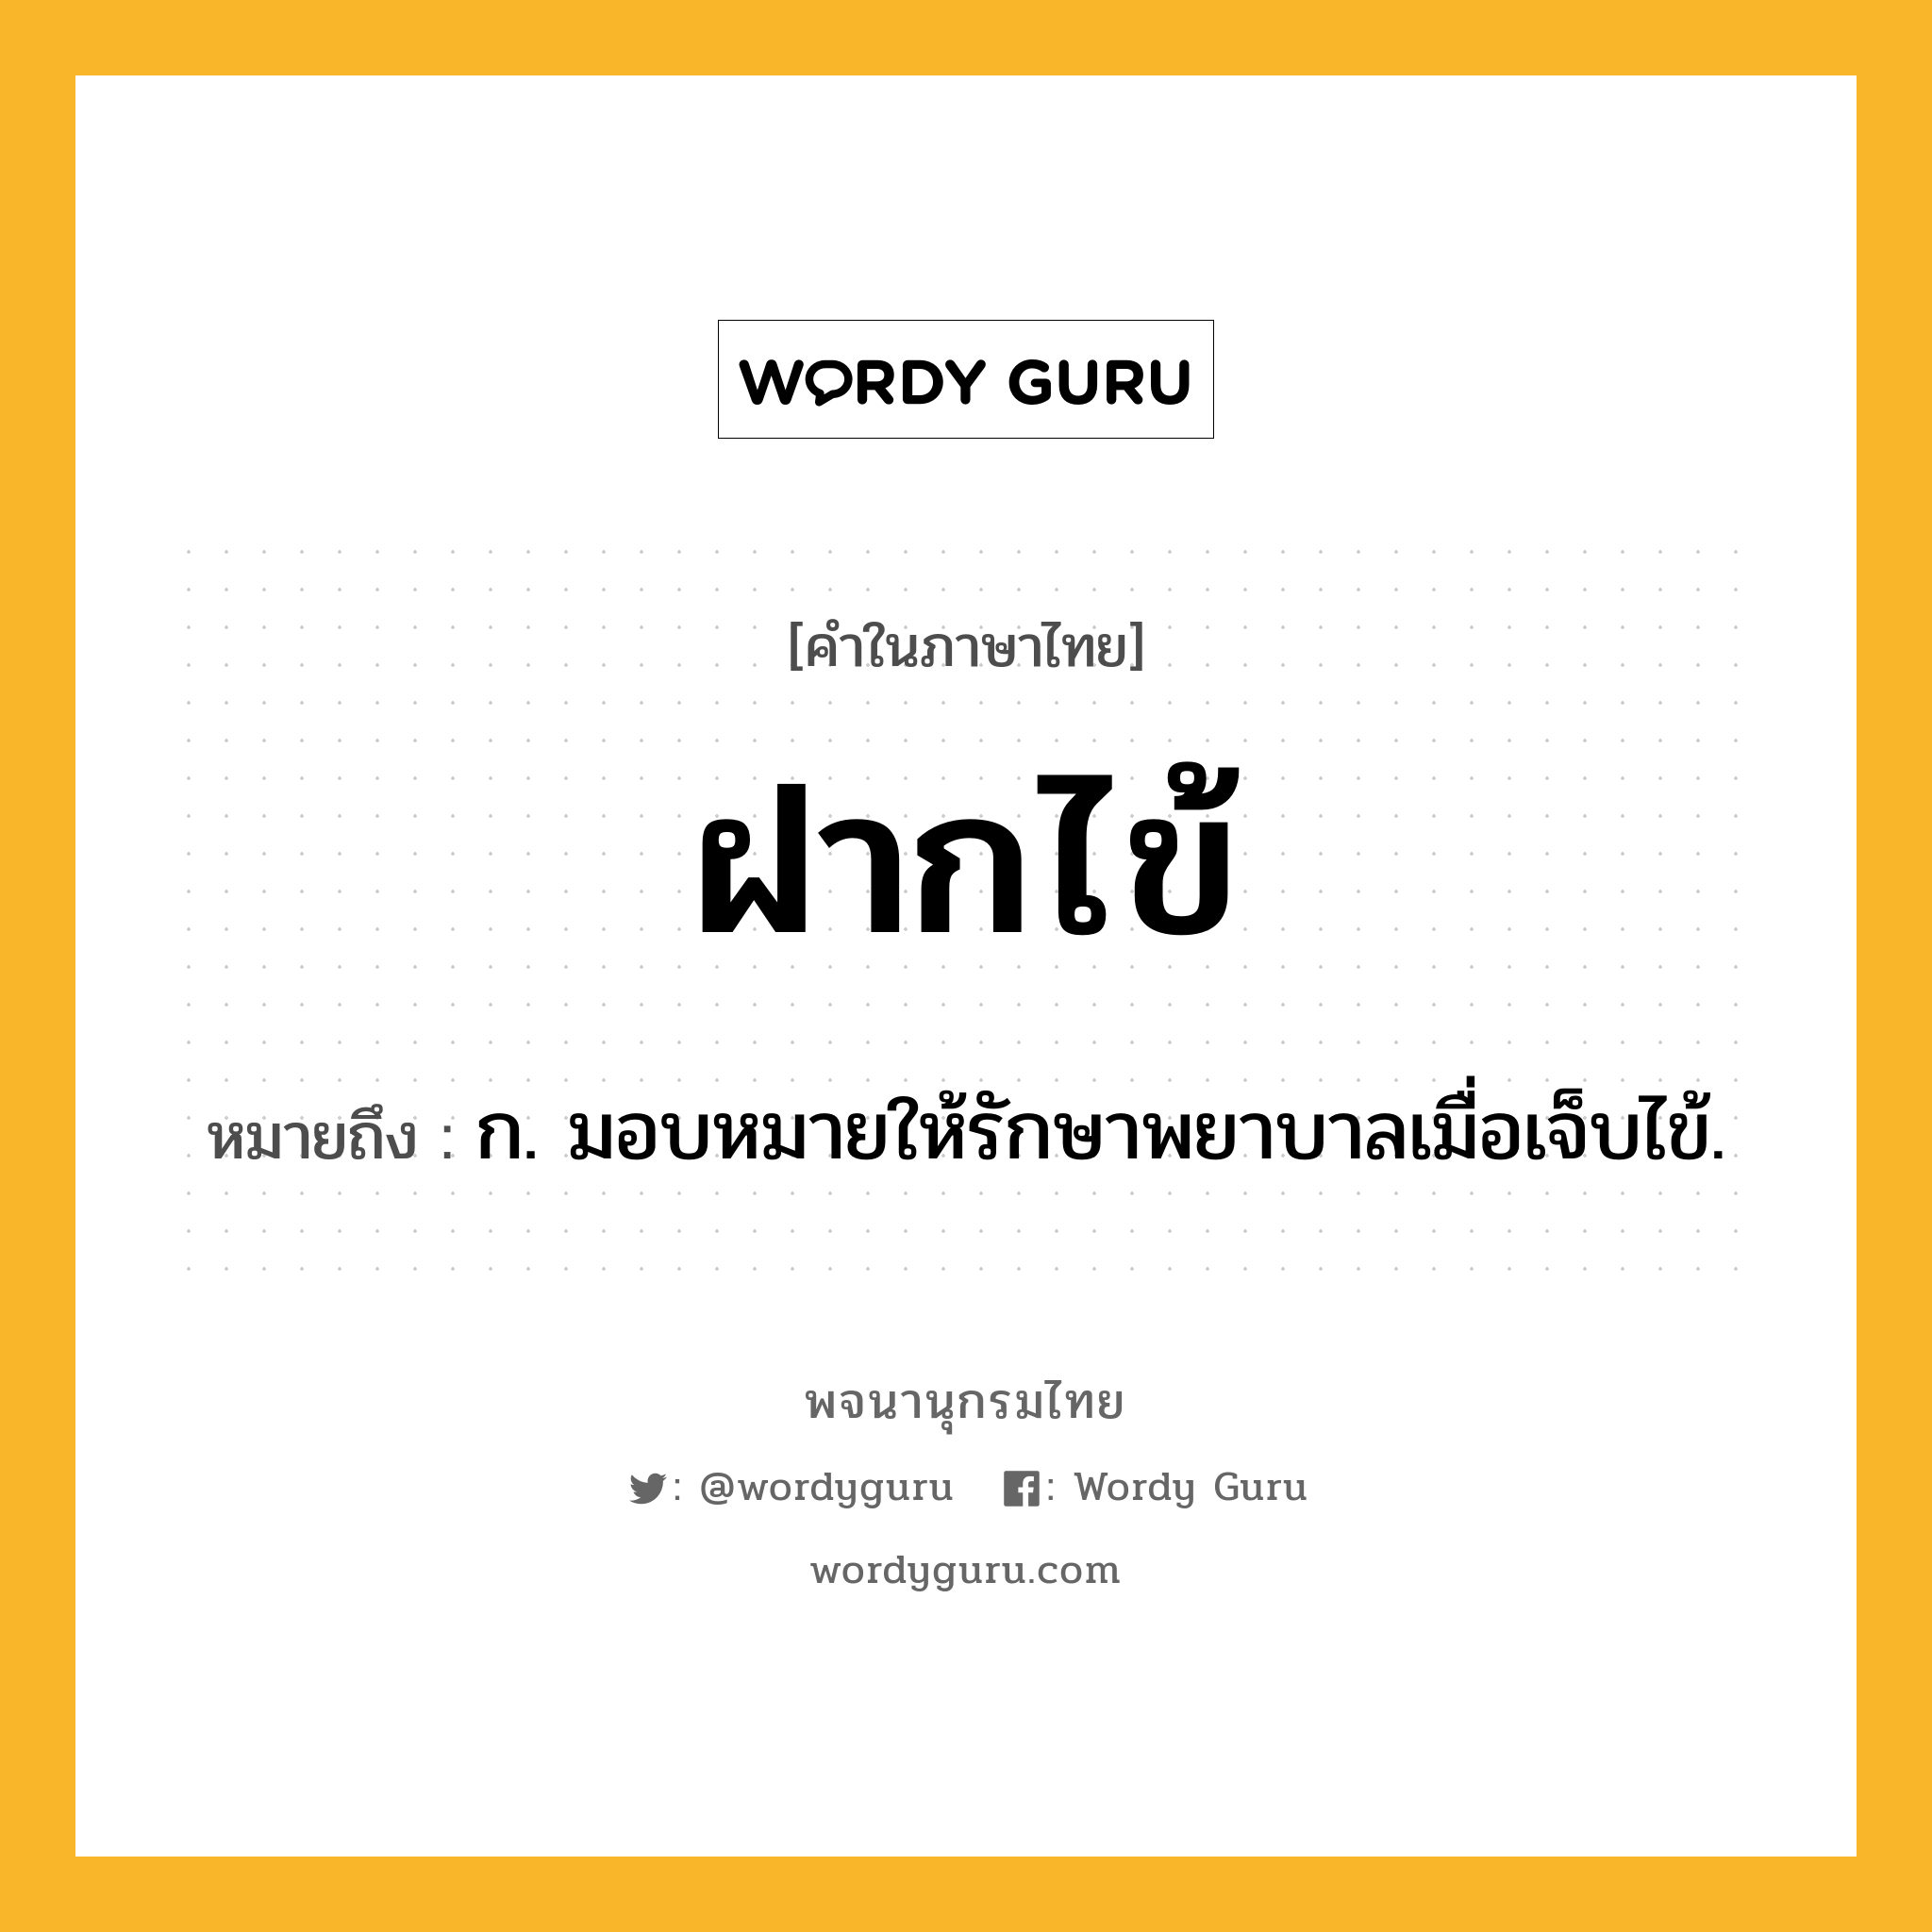 ฝากไข้ ความหมาย หมายถึงอะไร?, คำในภาษาไทย ฝากไข้ หมายถึง ก. มอบหมายให้รักษาพยาบาลเมื่อเจ็บไข้.